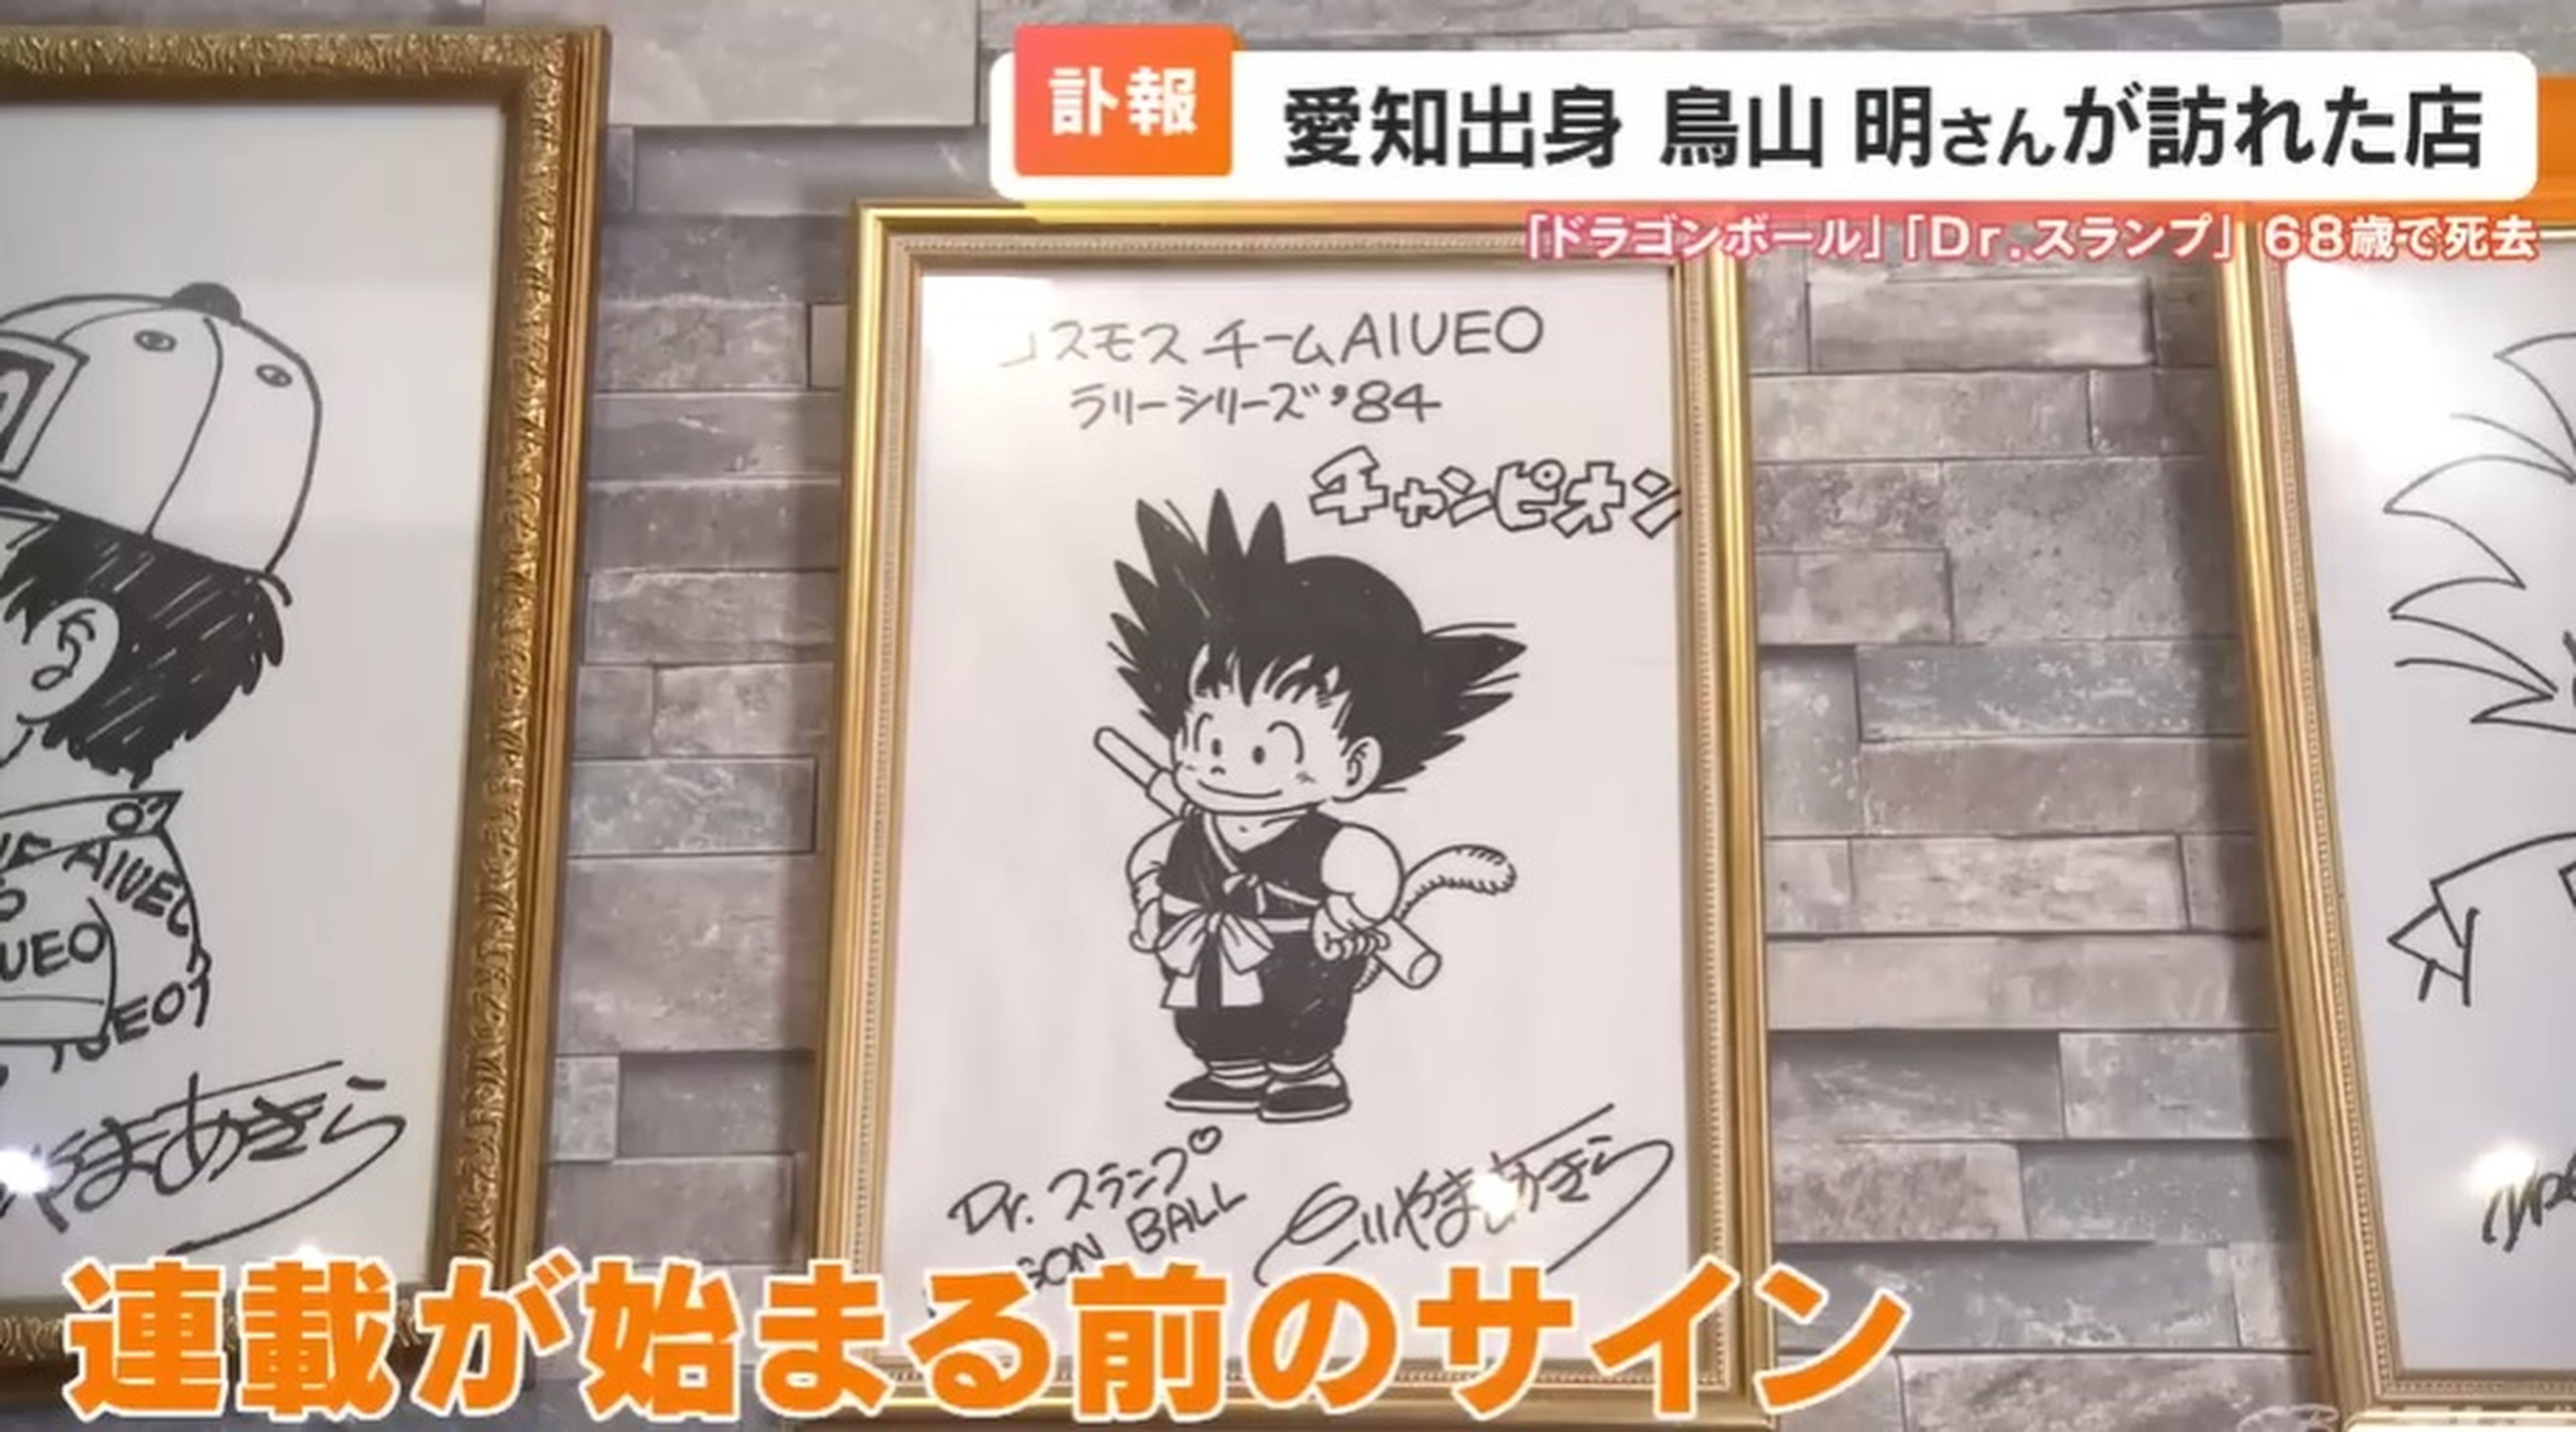 Sale a la luz un nuevo dibujo de Goku creado por Akira Toriyama antes de que se publicara la serie de Dragon Ball en Japón 